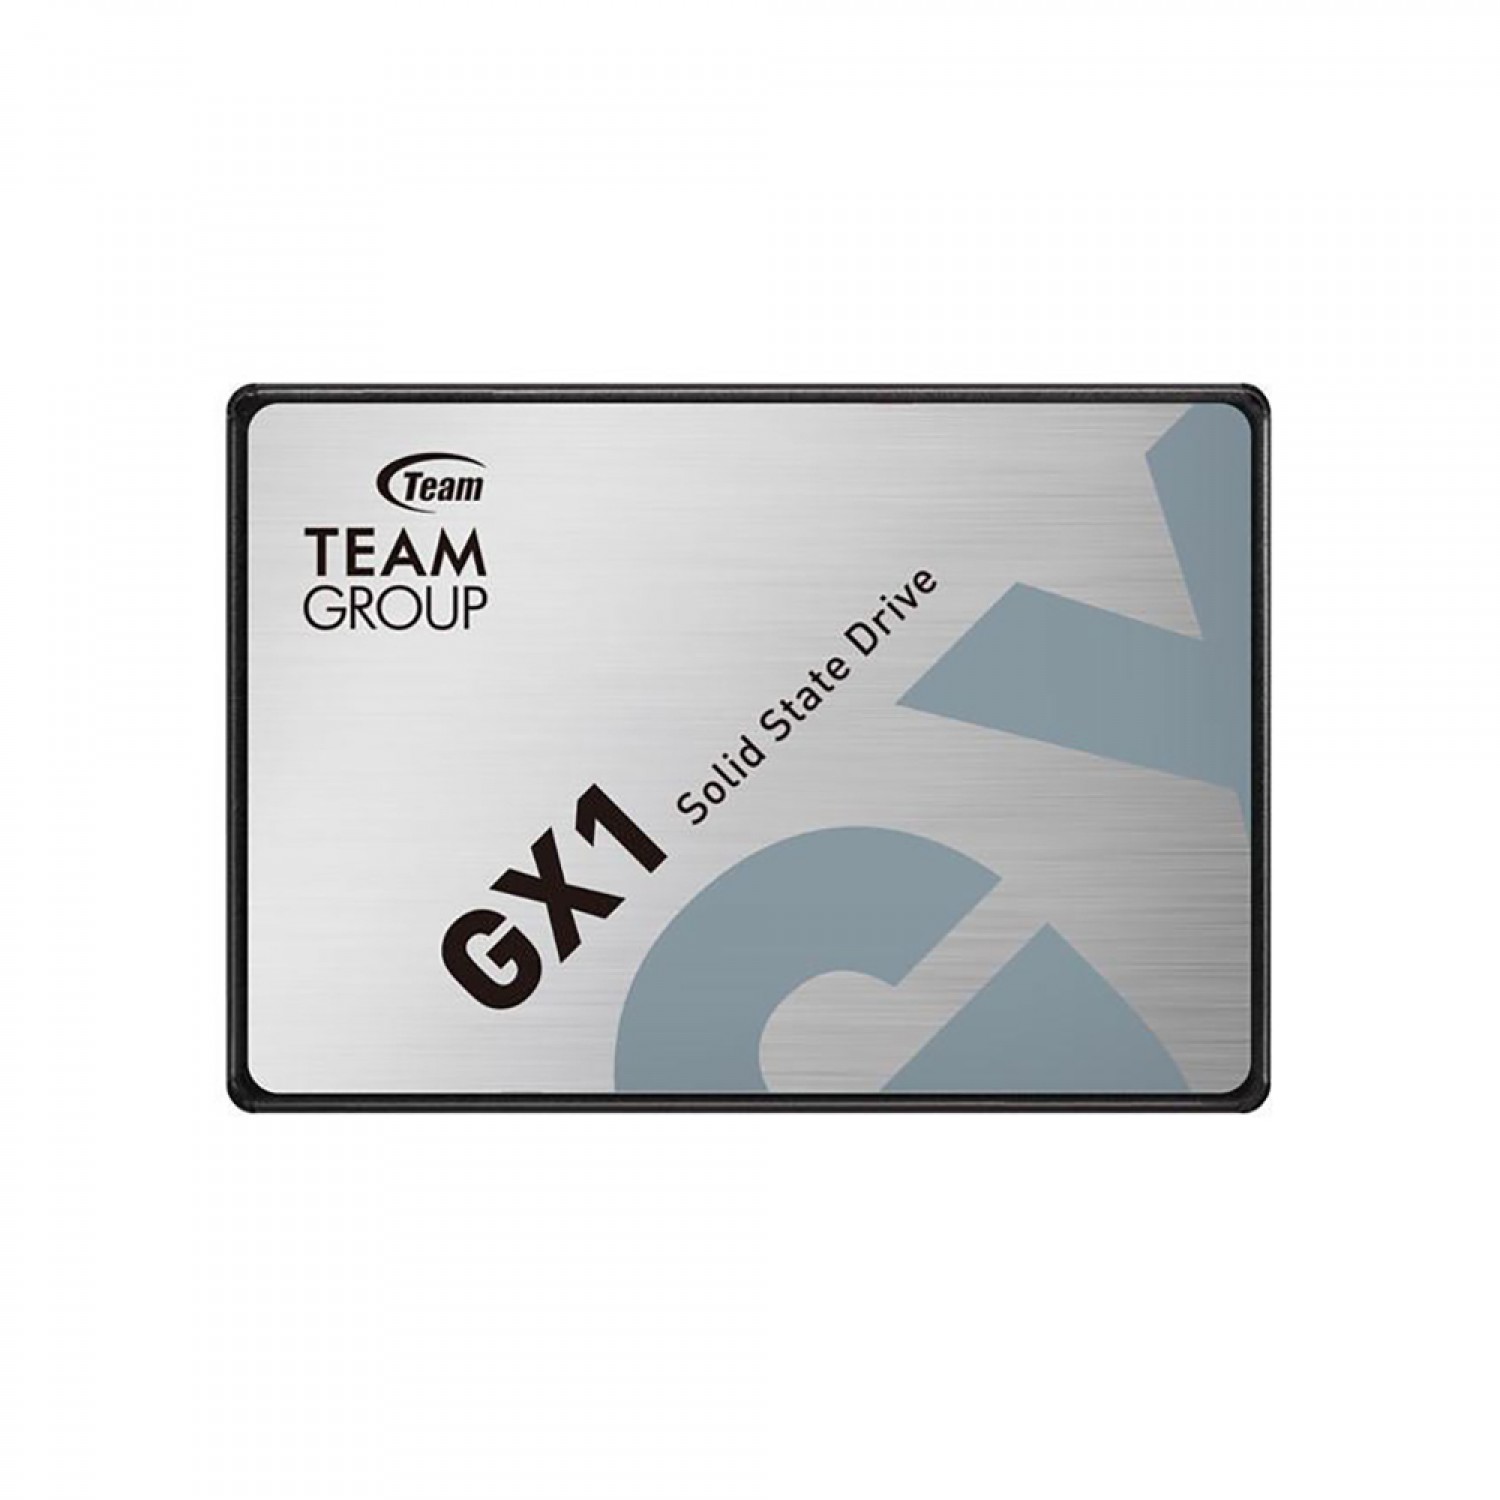 حافظه اس اس دی TeamGroup GX1 120GB